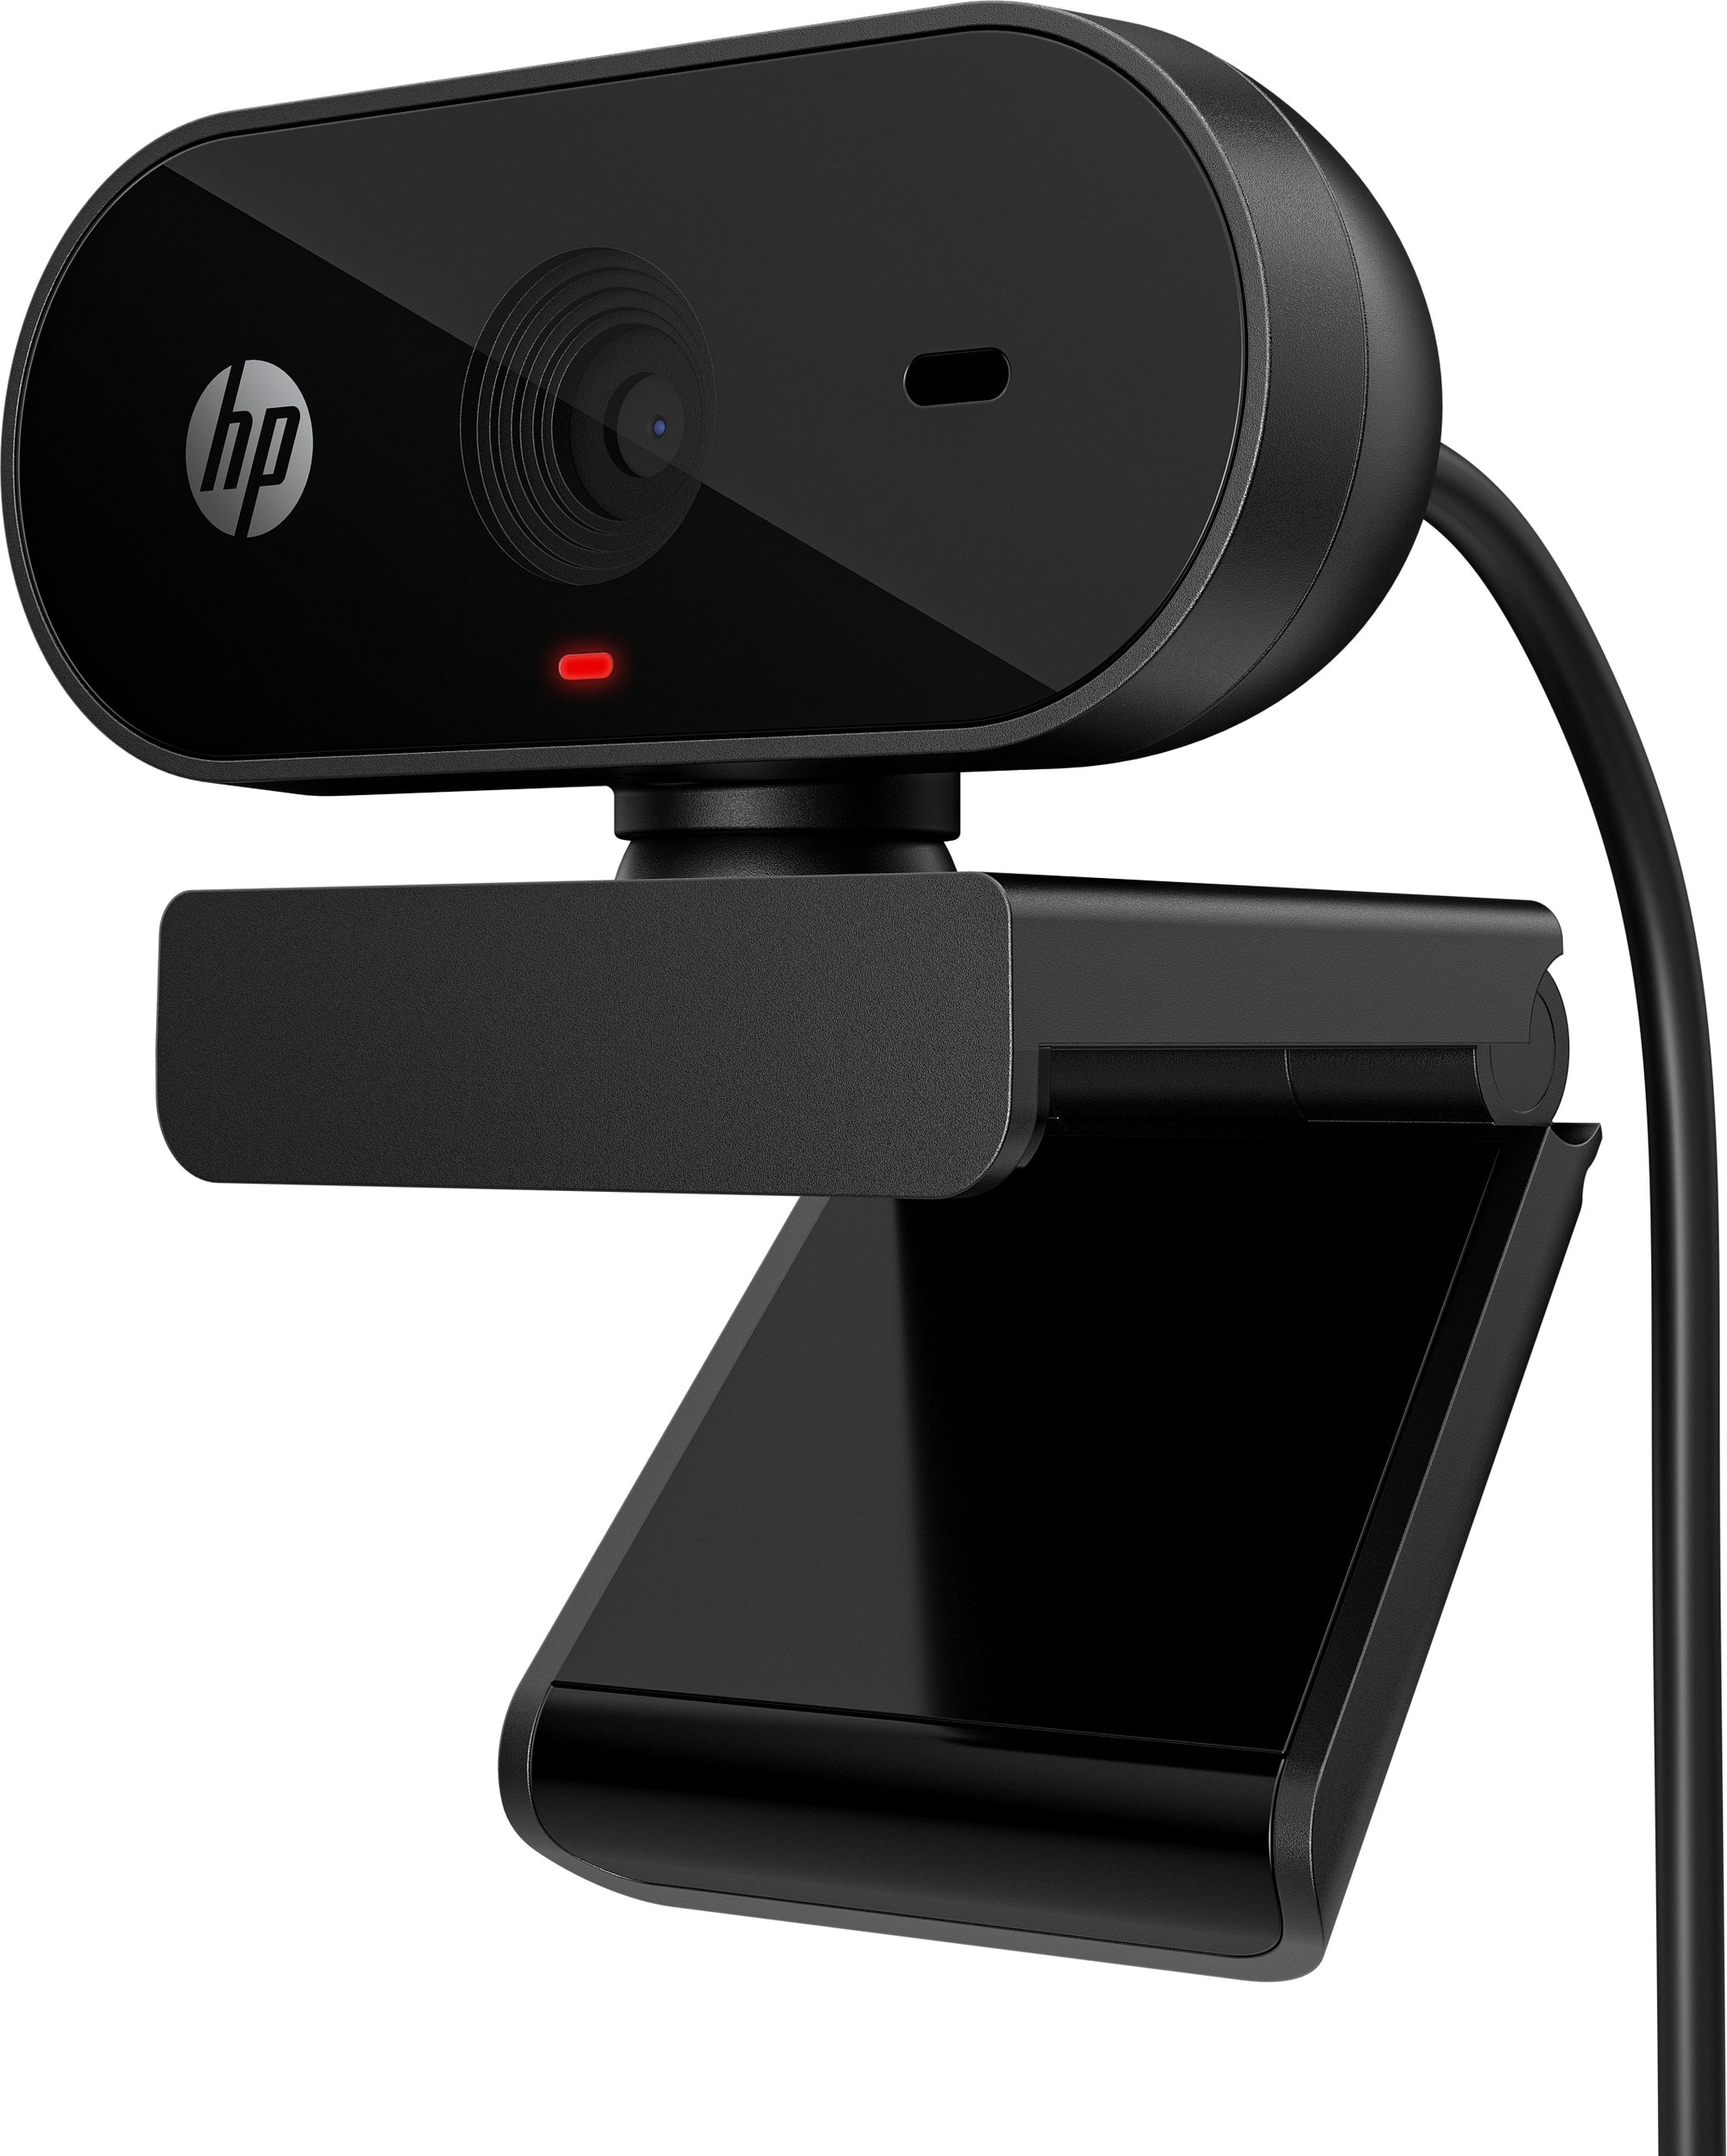 Webcam Hp 53X27Aa Fhd 325 Usb-A Full Hd 1080 De 30 Cuadros Por Segundo